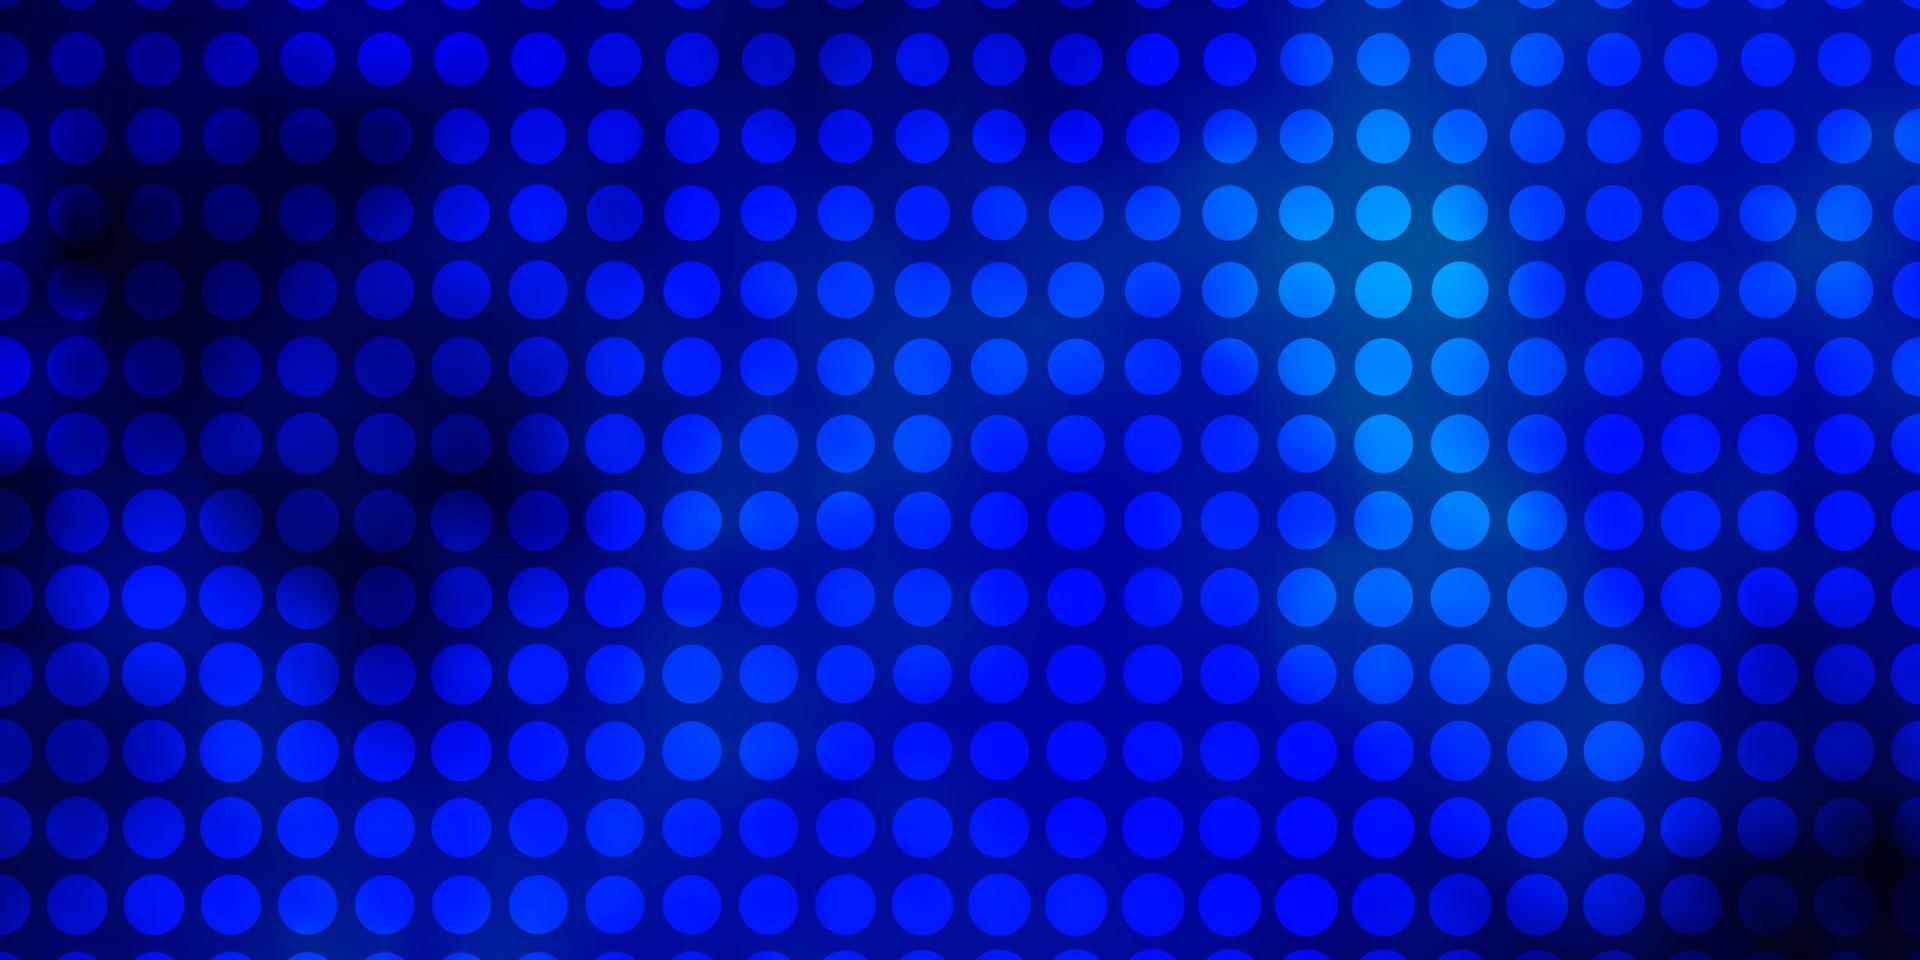 fundo azul claro do vetor com círculos.